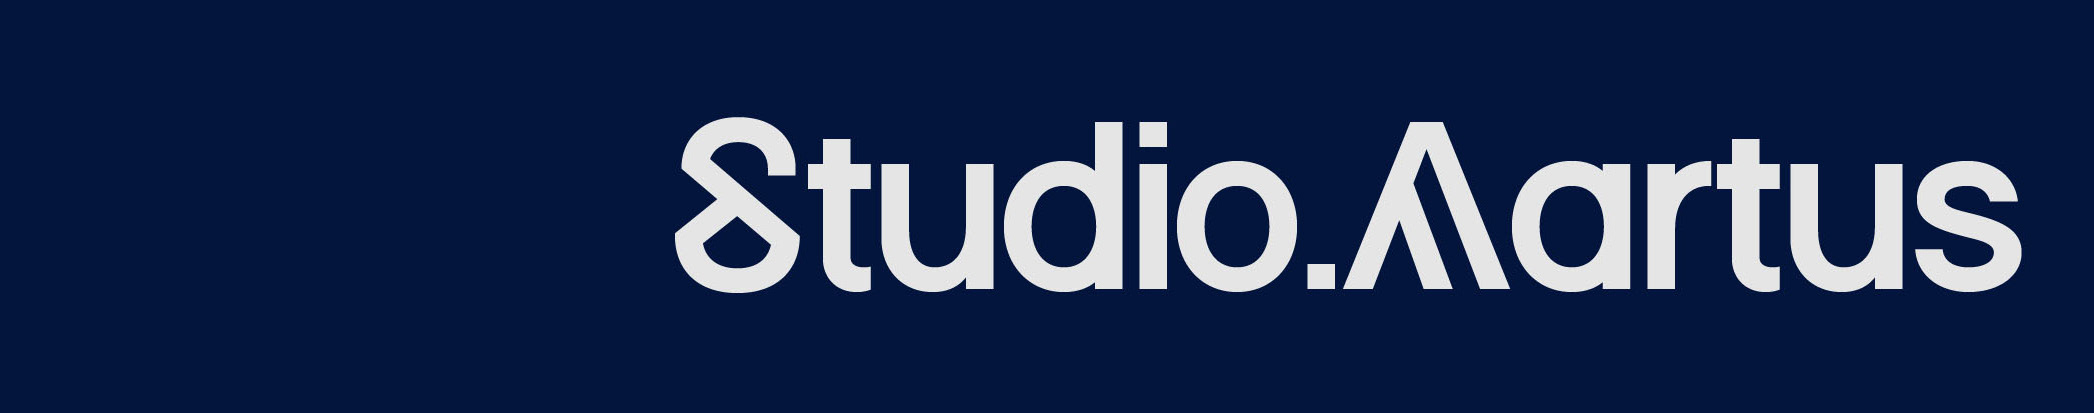 Studio Aartus's profile banner